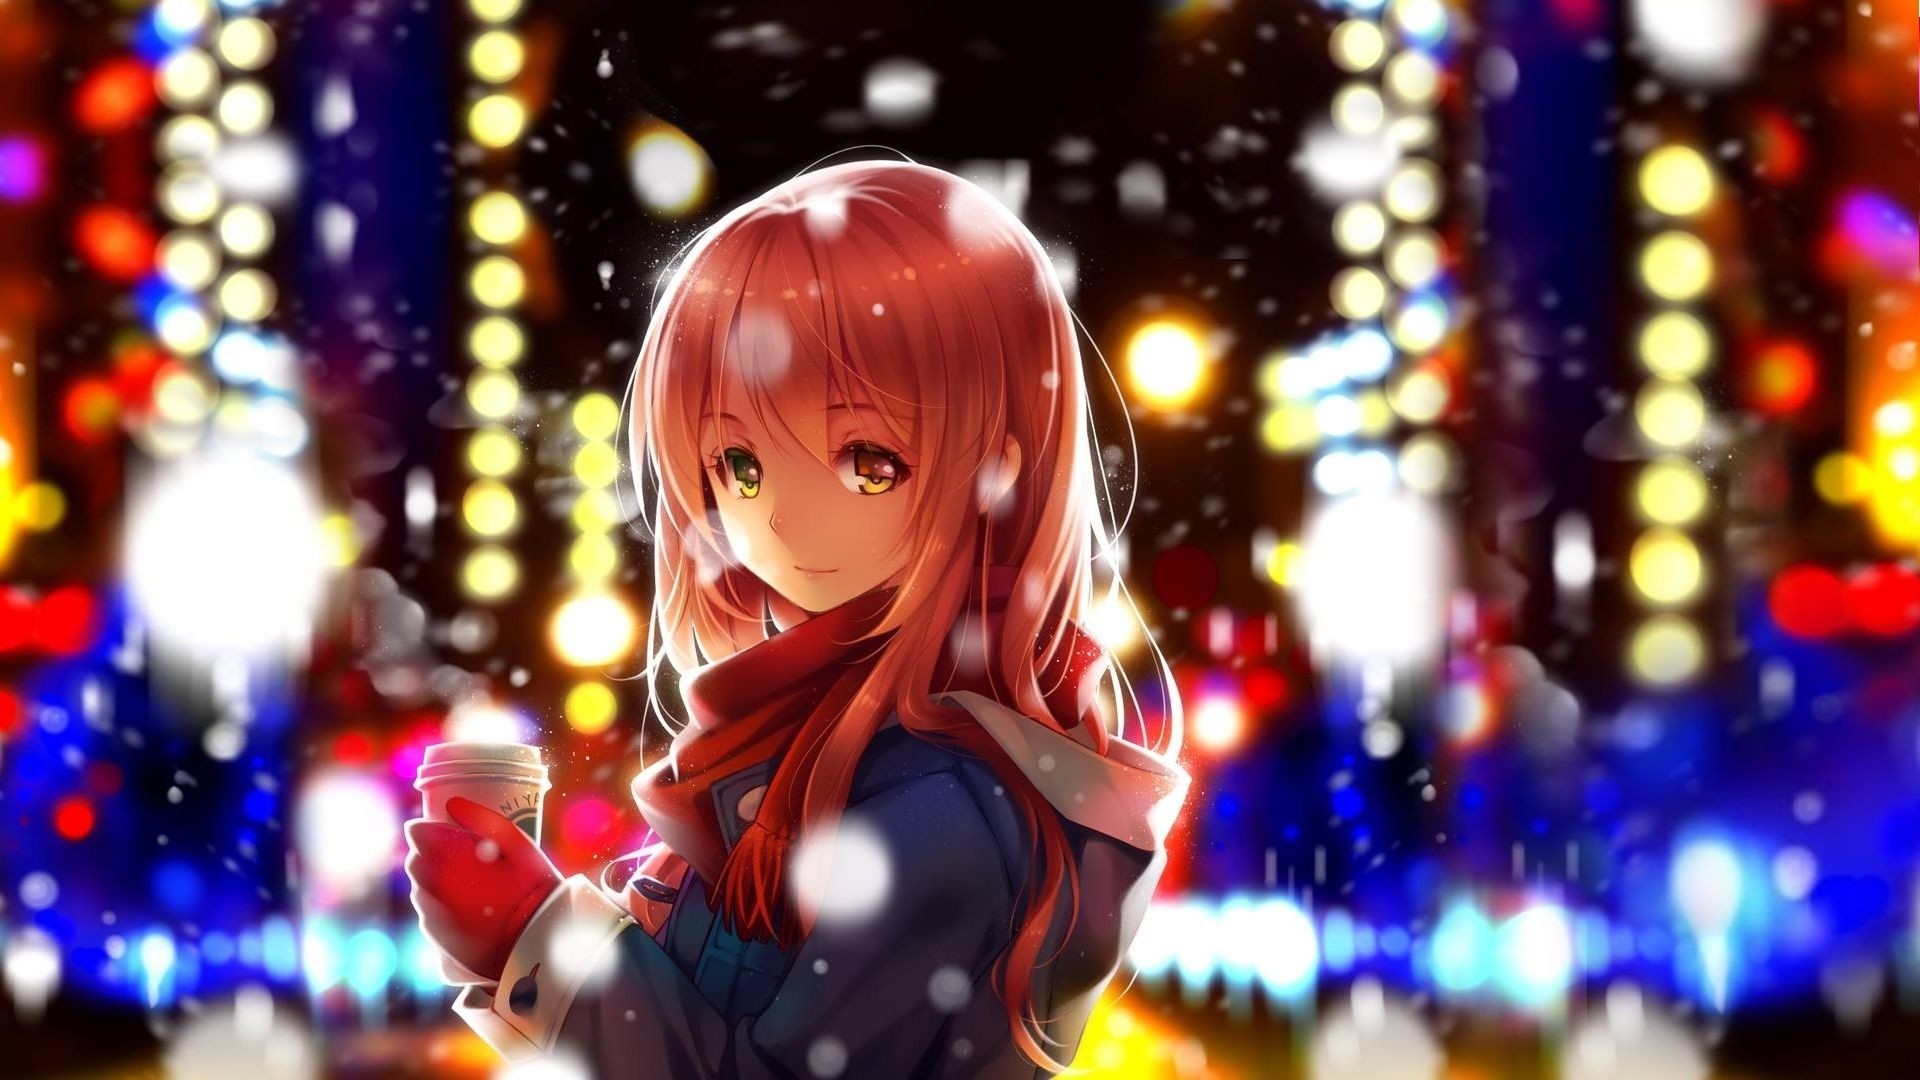 Christmas Anime Girl Wallpaper image hd